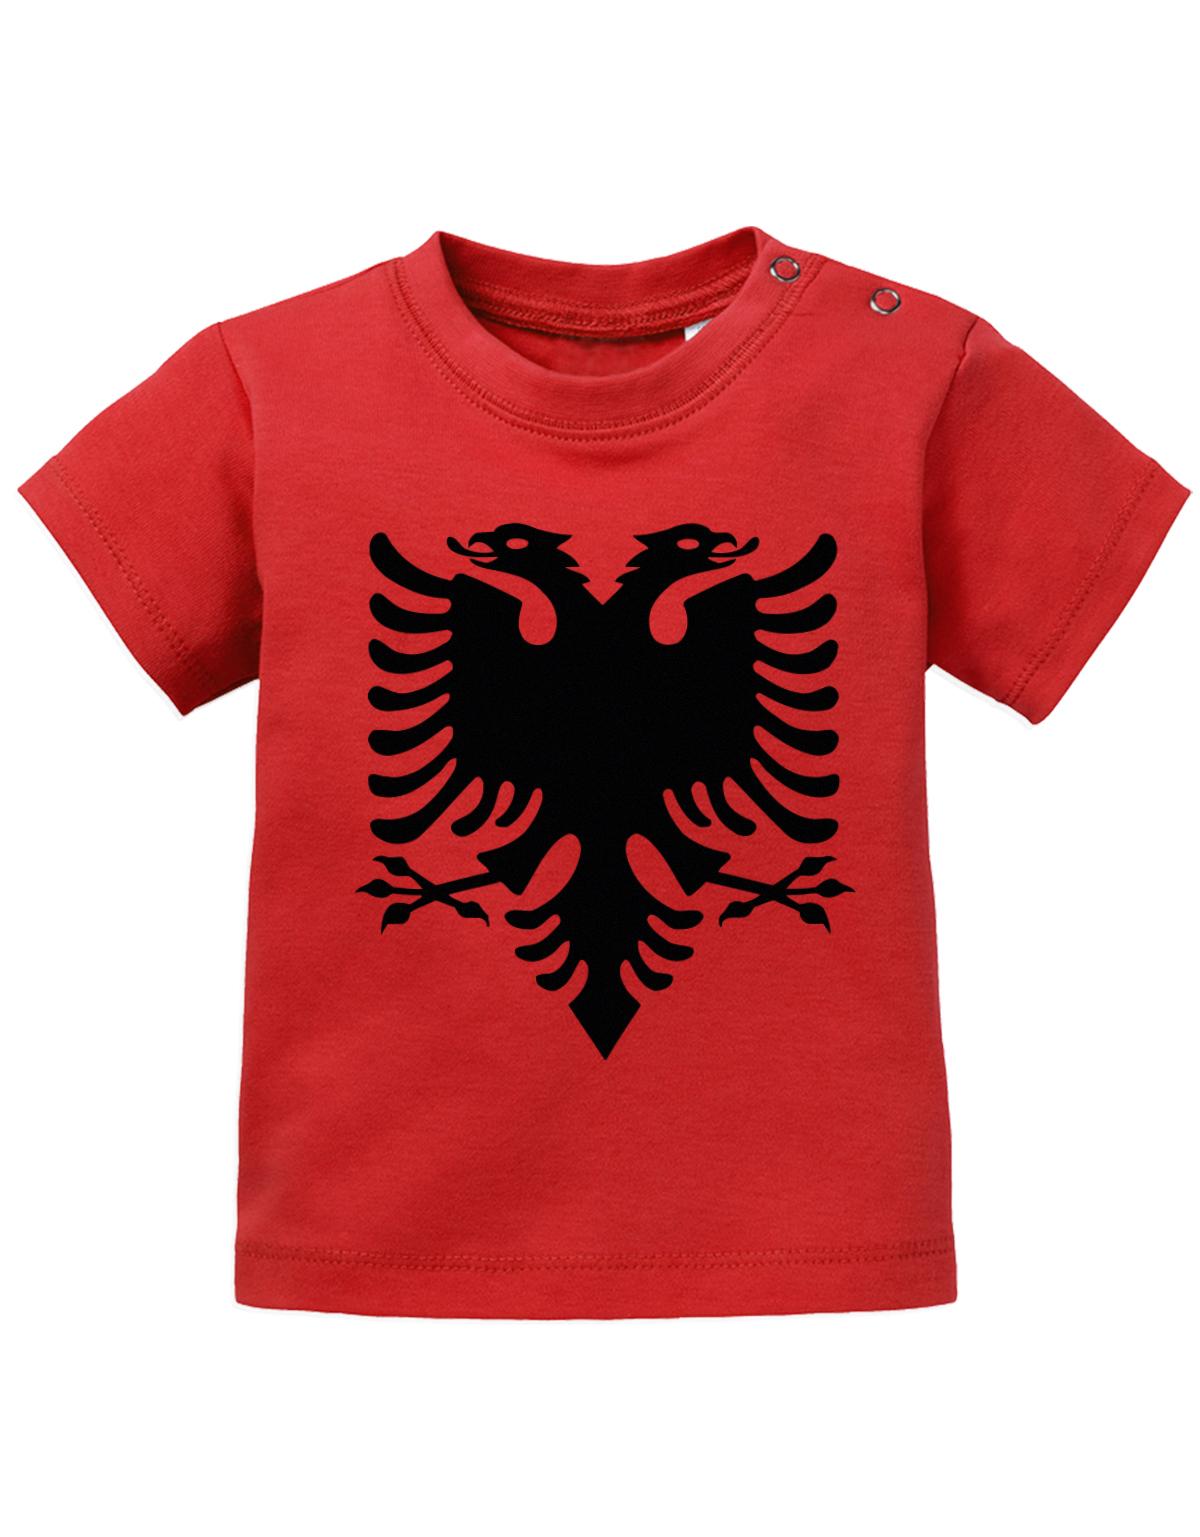 Albanien T Shirt für Junge und Mädchen. Albanische Flagge Design.